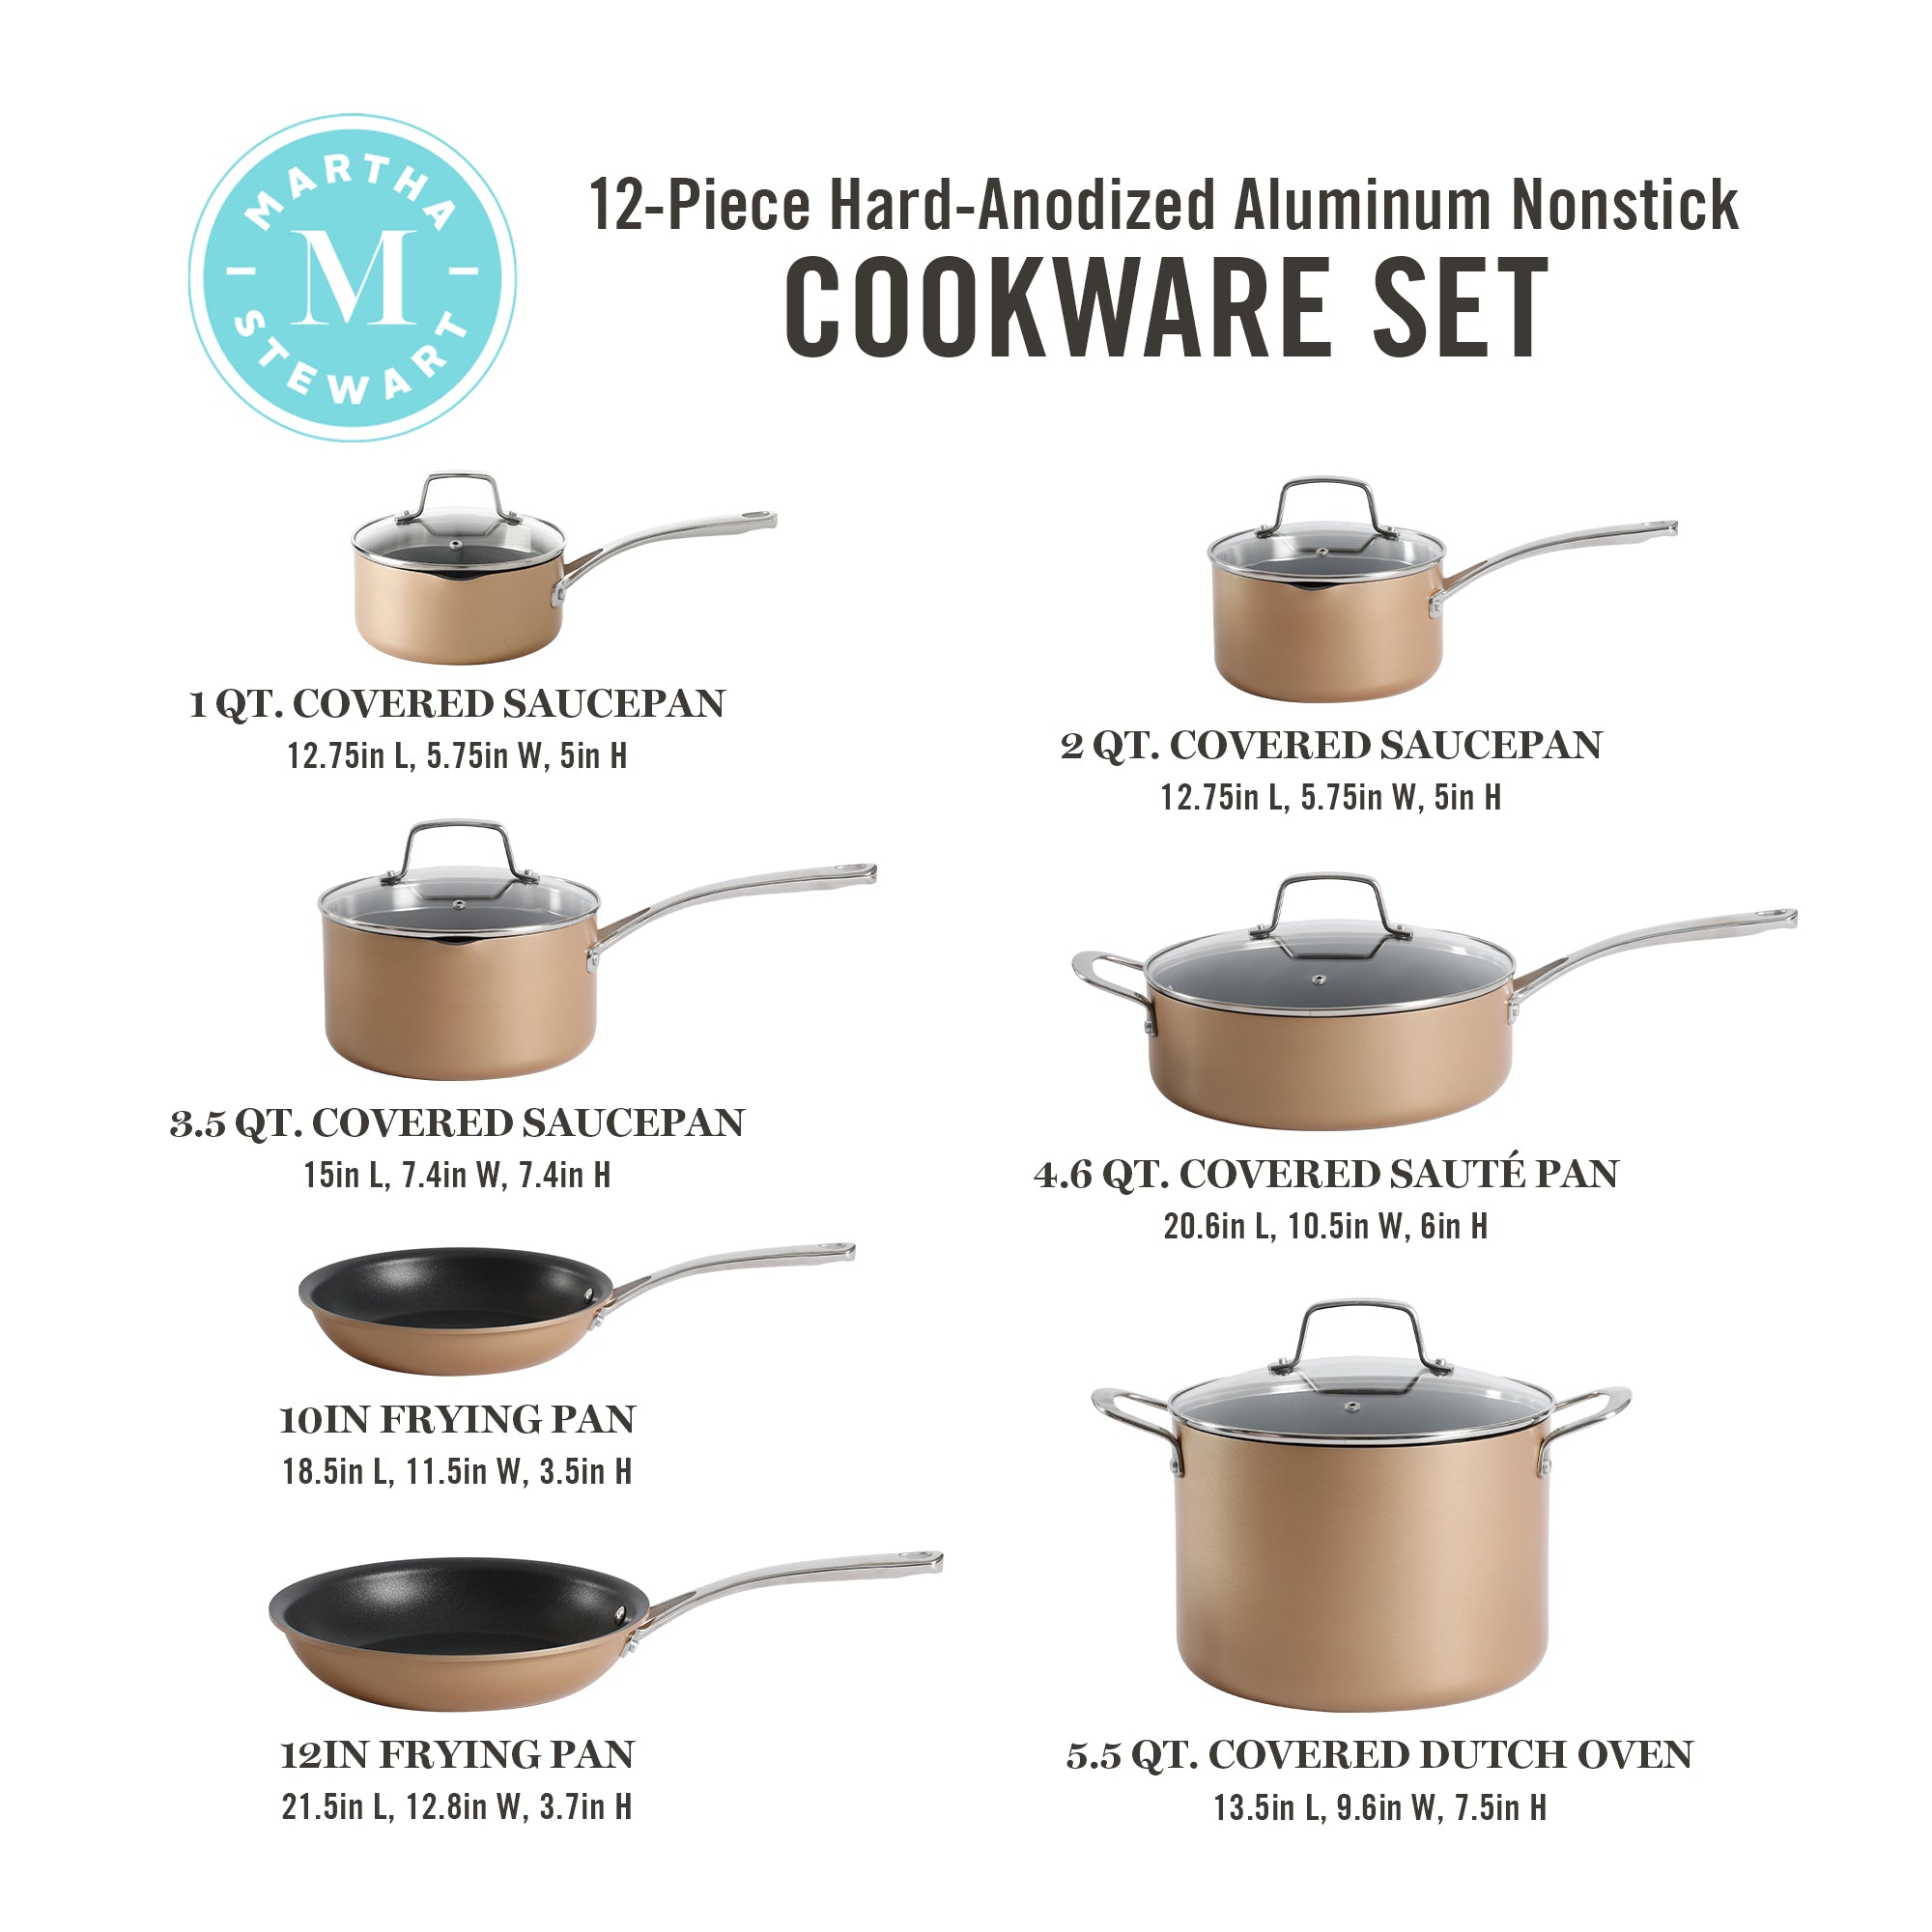 Martha Stewart 14 Piece Non-stick Cookware Combo Set & Reviews